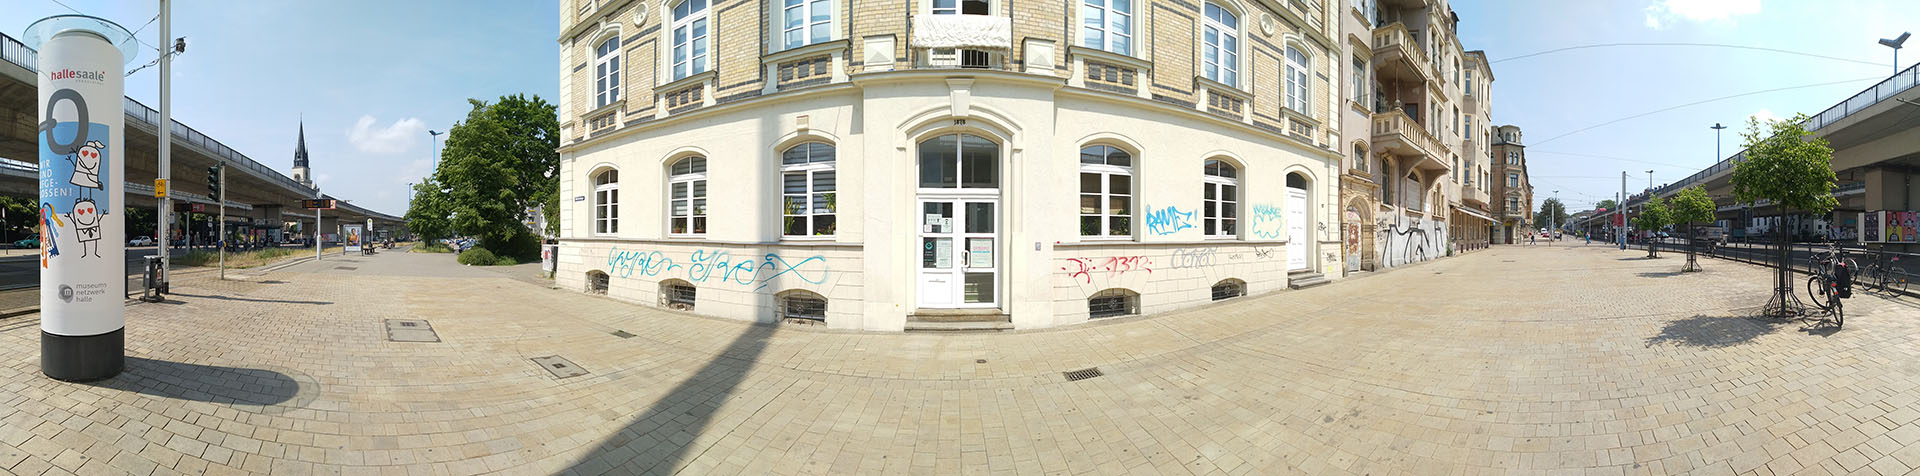 Panoramaaufnahme der Drogensuchtberatungsstelle in Halle (Saale) vom Vorplatz aus